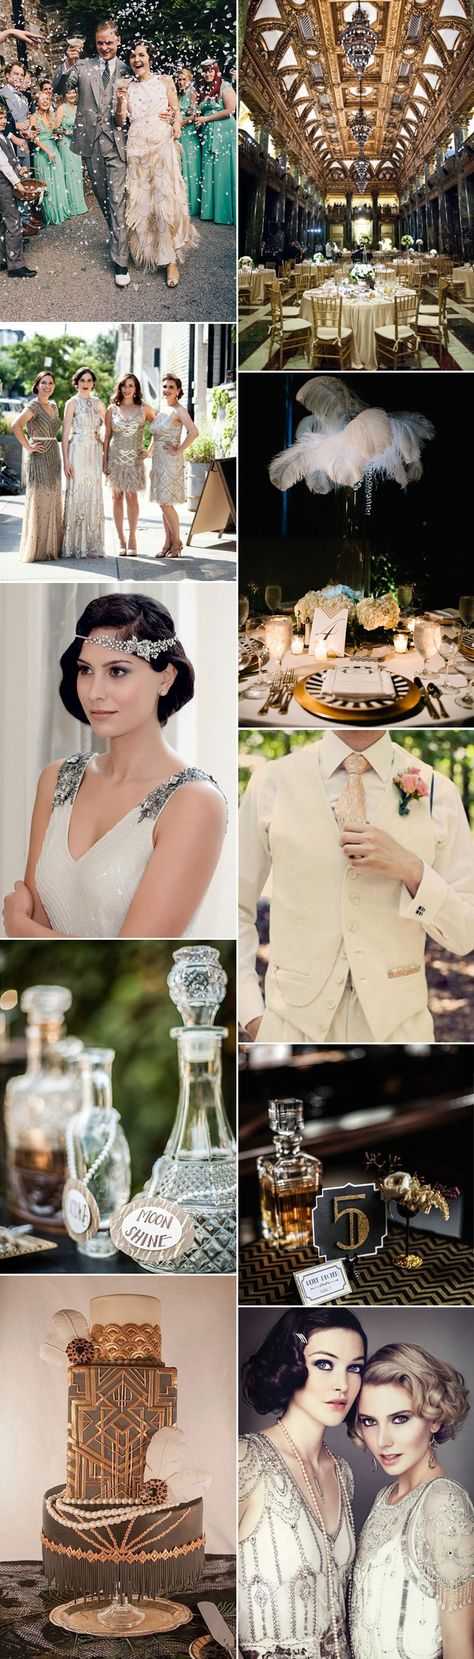 Свадьба в стиле гэтсби - идеи оформления и декор, образ молодоженов, фото и видео